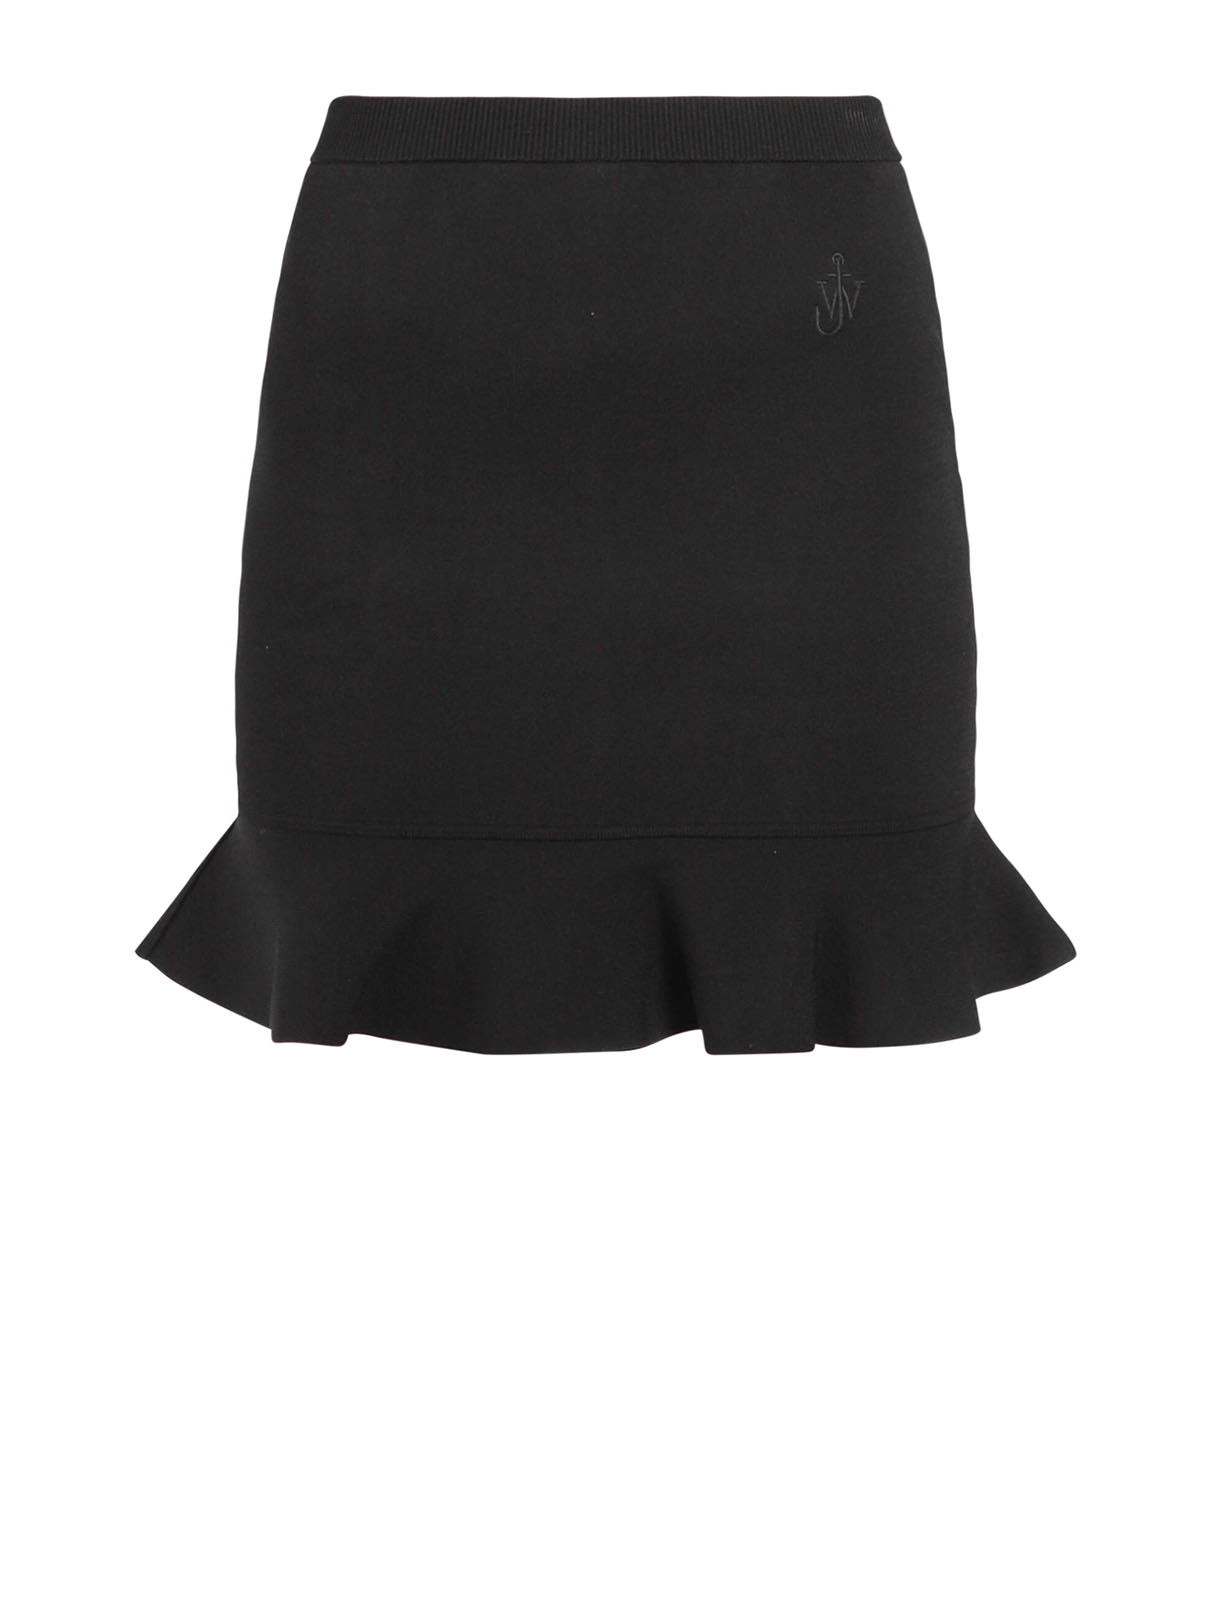 Ruffled Hem Mini Skirt